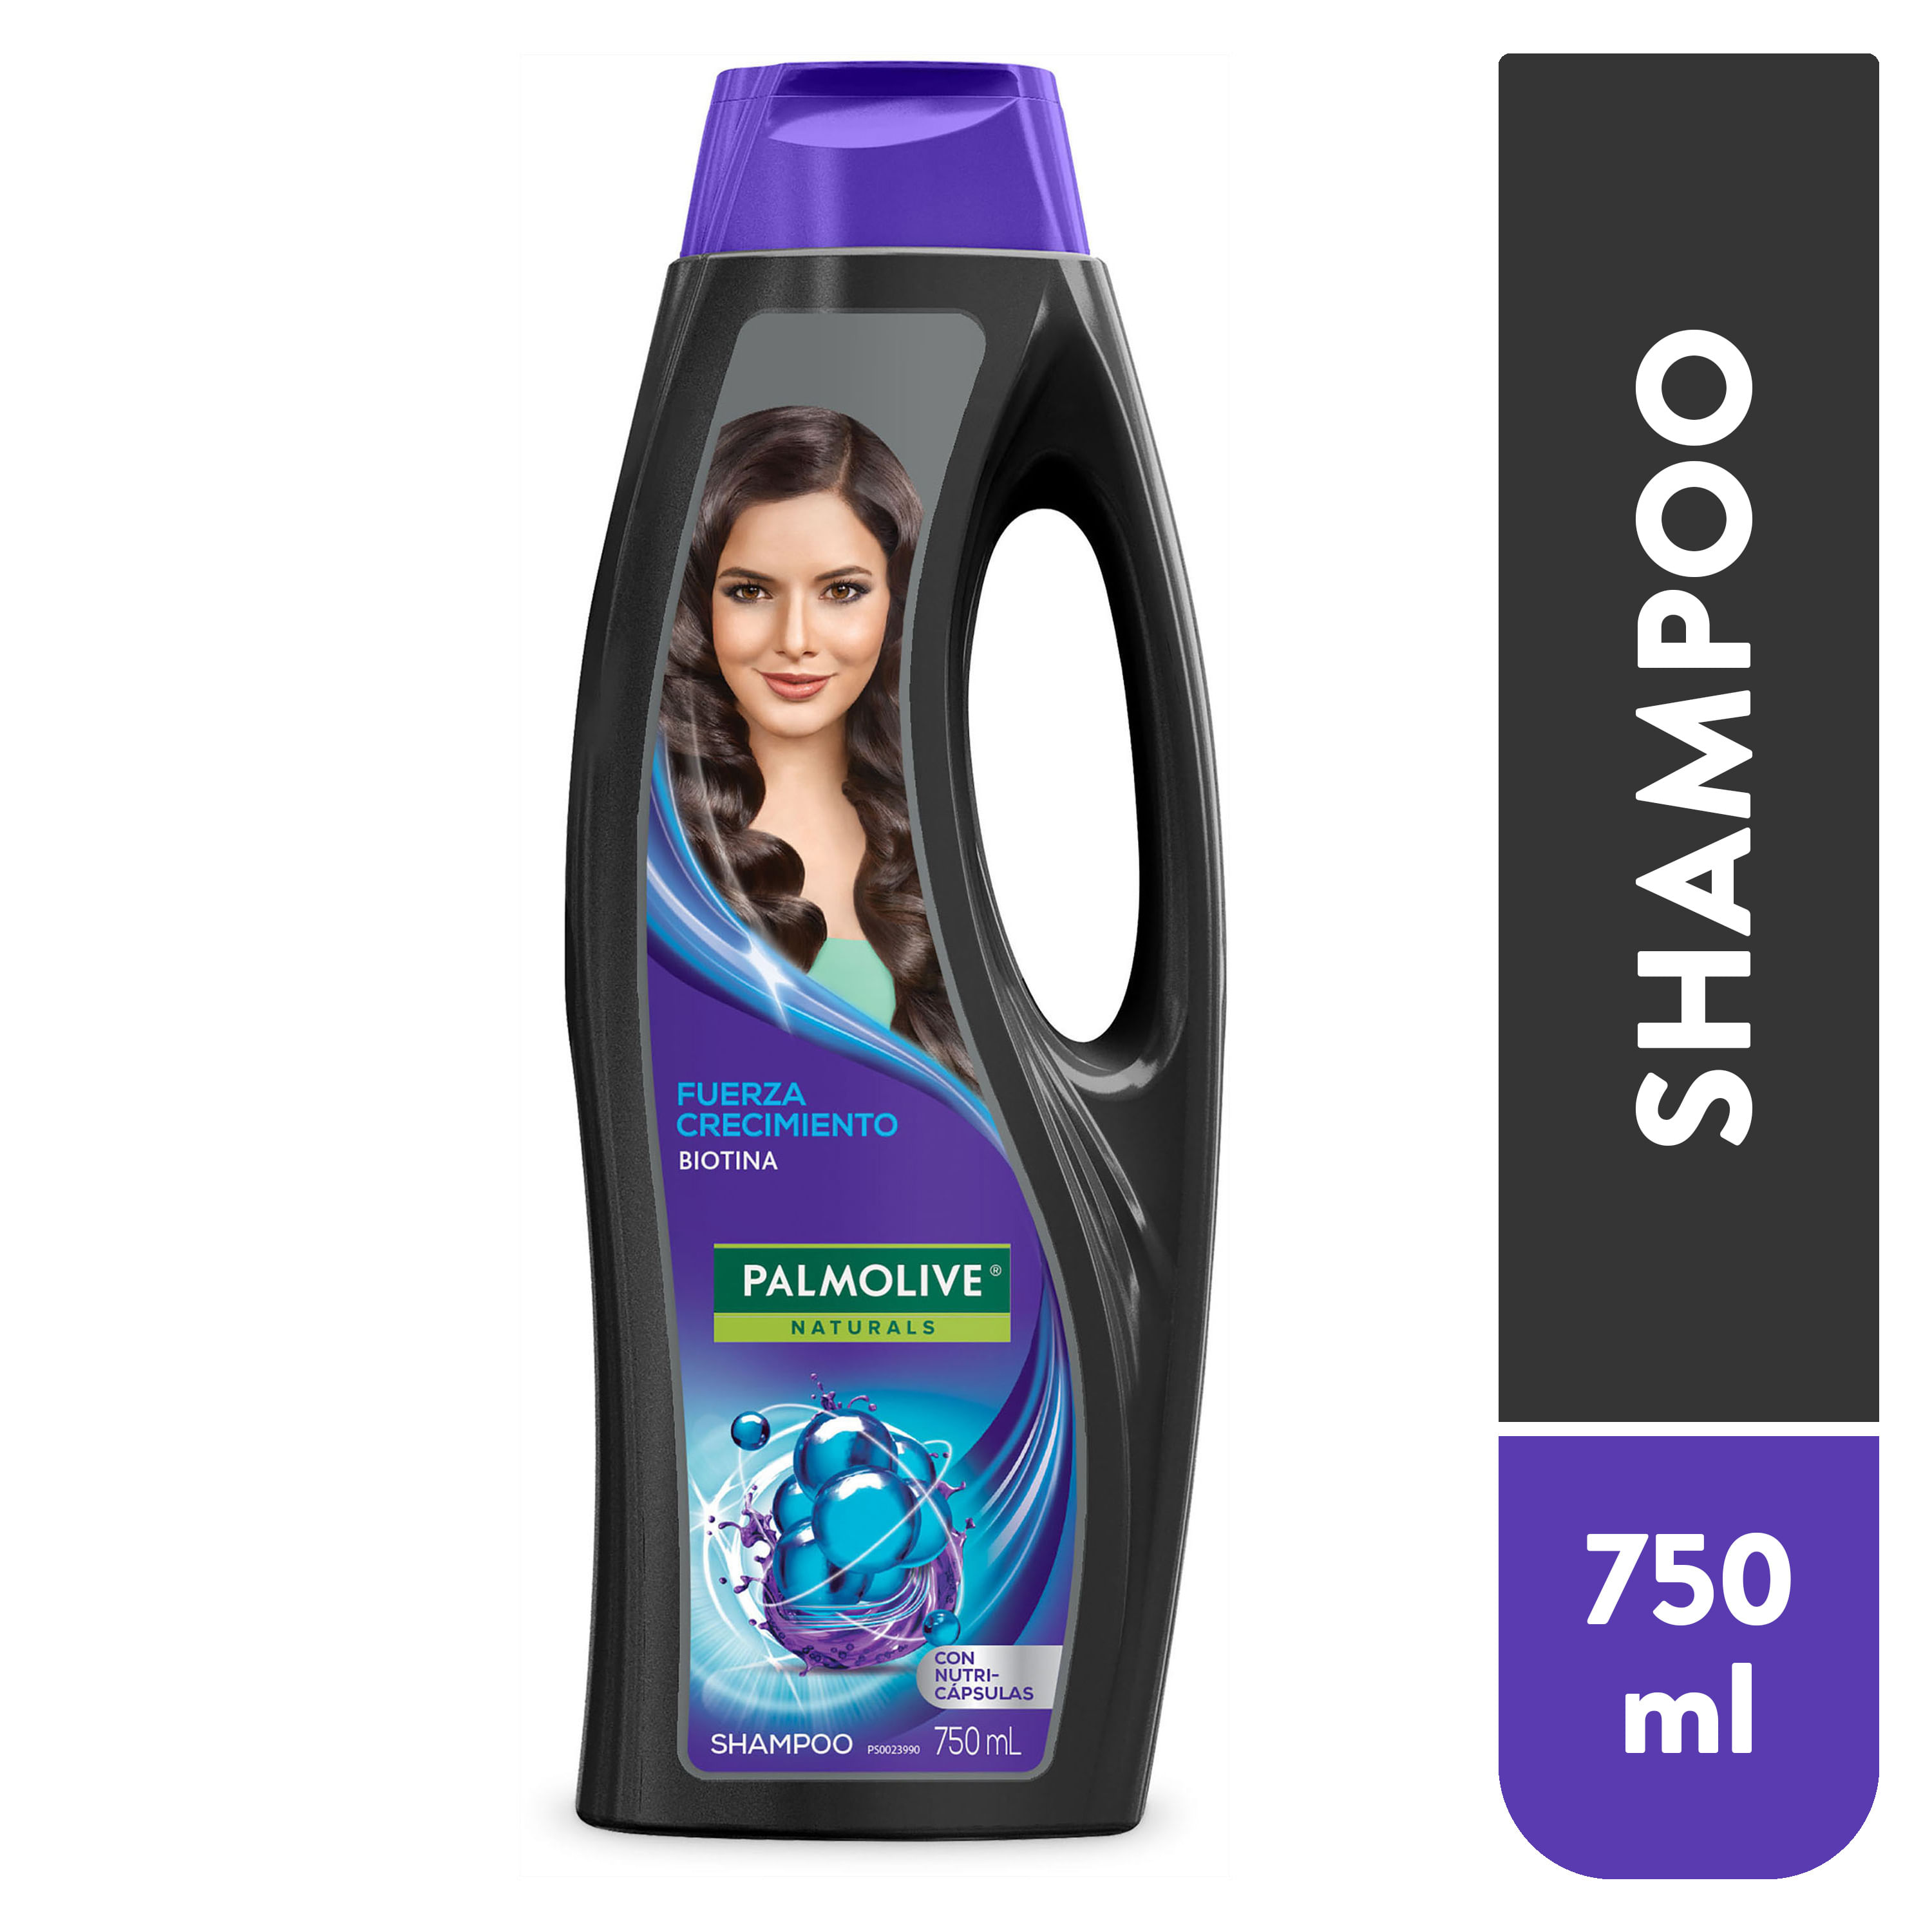 Shampoo-Palmolive-Naturals-Biotina-Brillo-y-Fuerza-Crecimiento-750-ml-1-6553